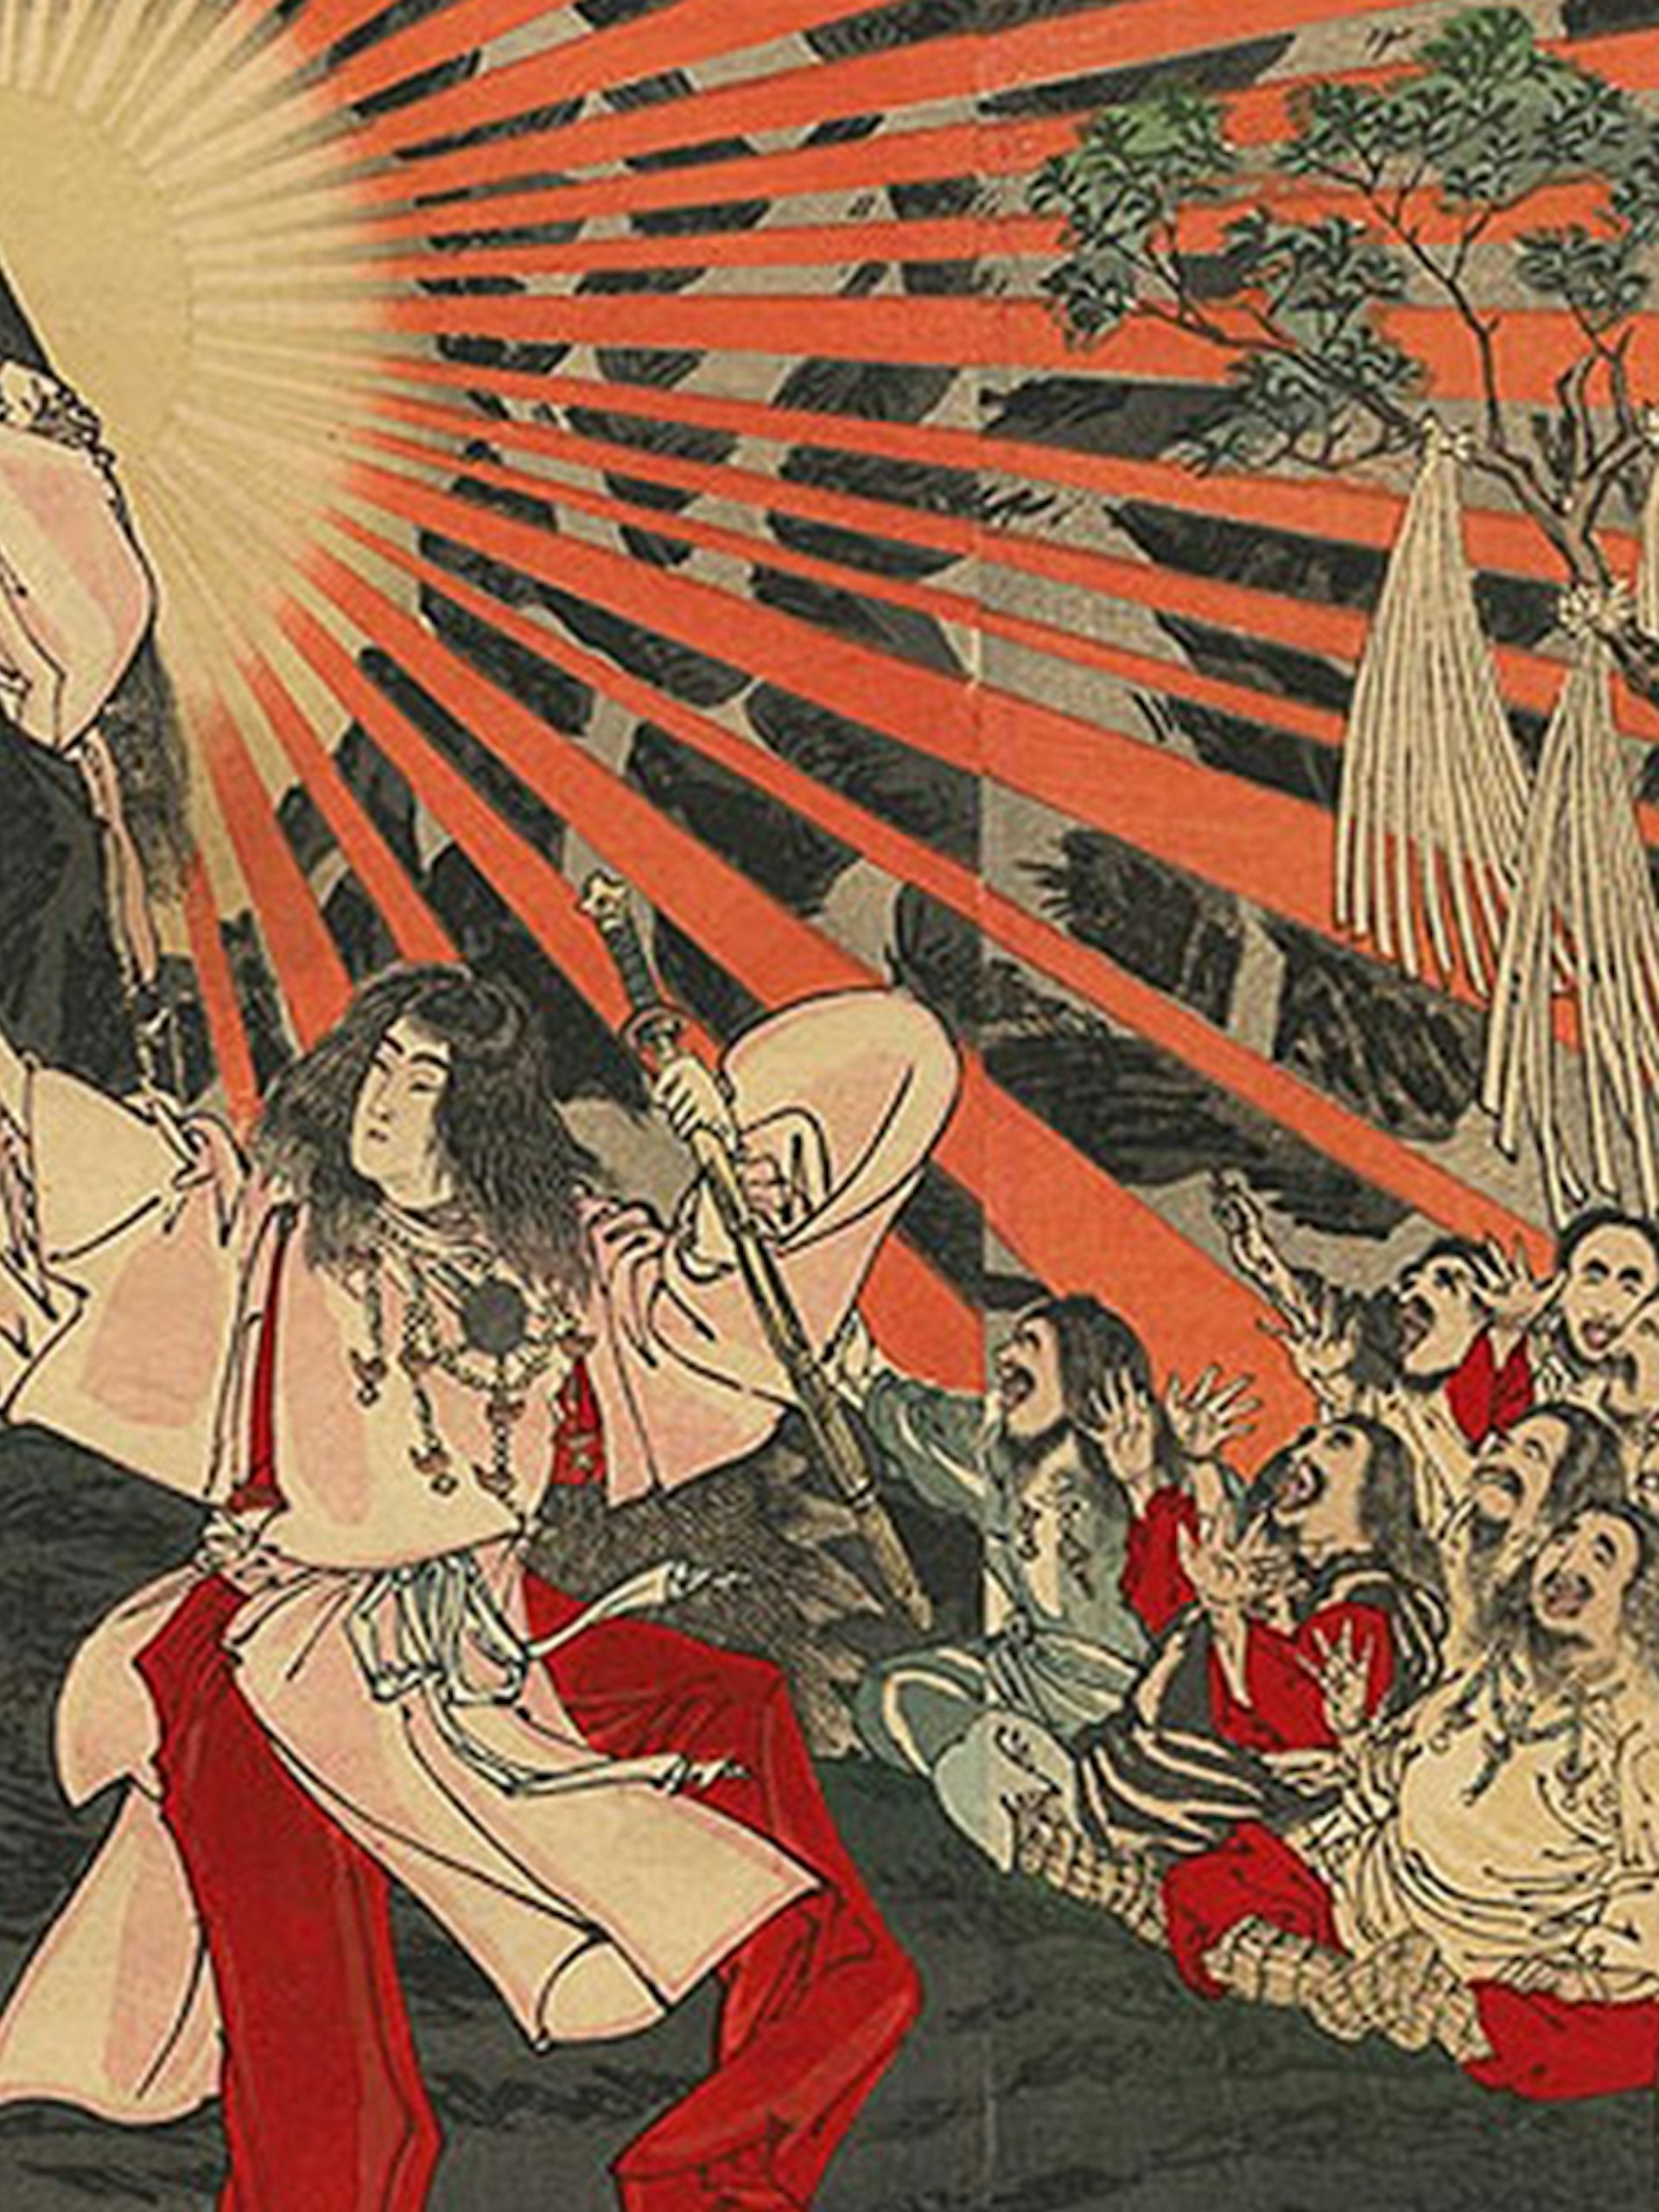 Amaterasu, Japanese Goddess of the Sun (3:2)